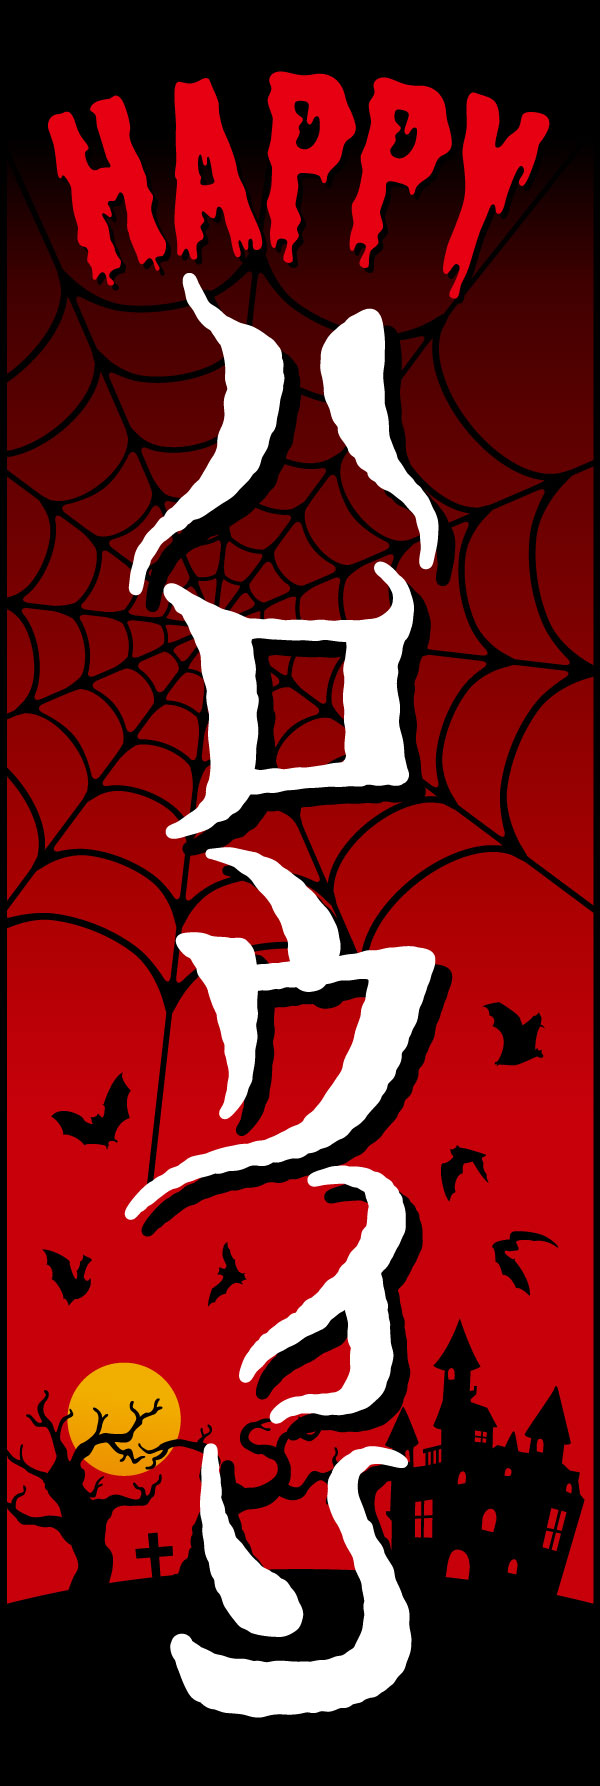 ハロウィン 3 「ハロウィン」の幟です。ホラー映画感を意識したデザインです。パーティーの装飾にもどうぞ！(Y.M)